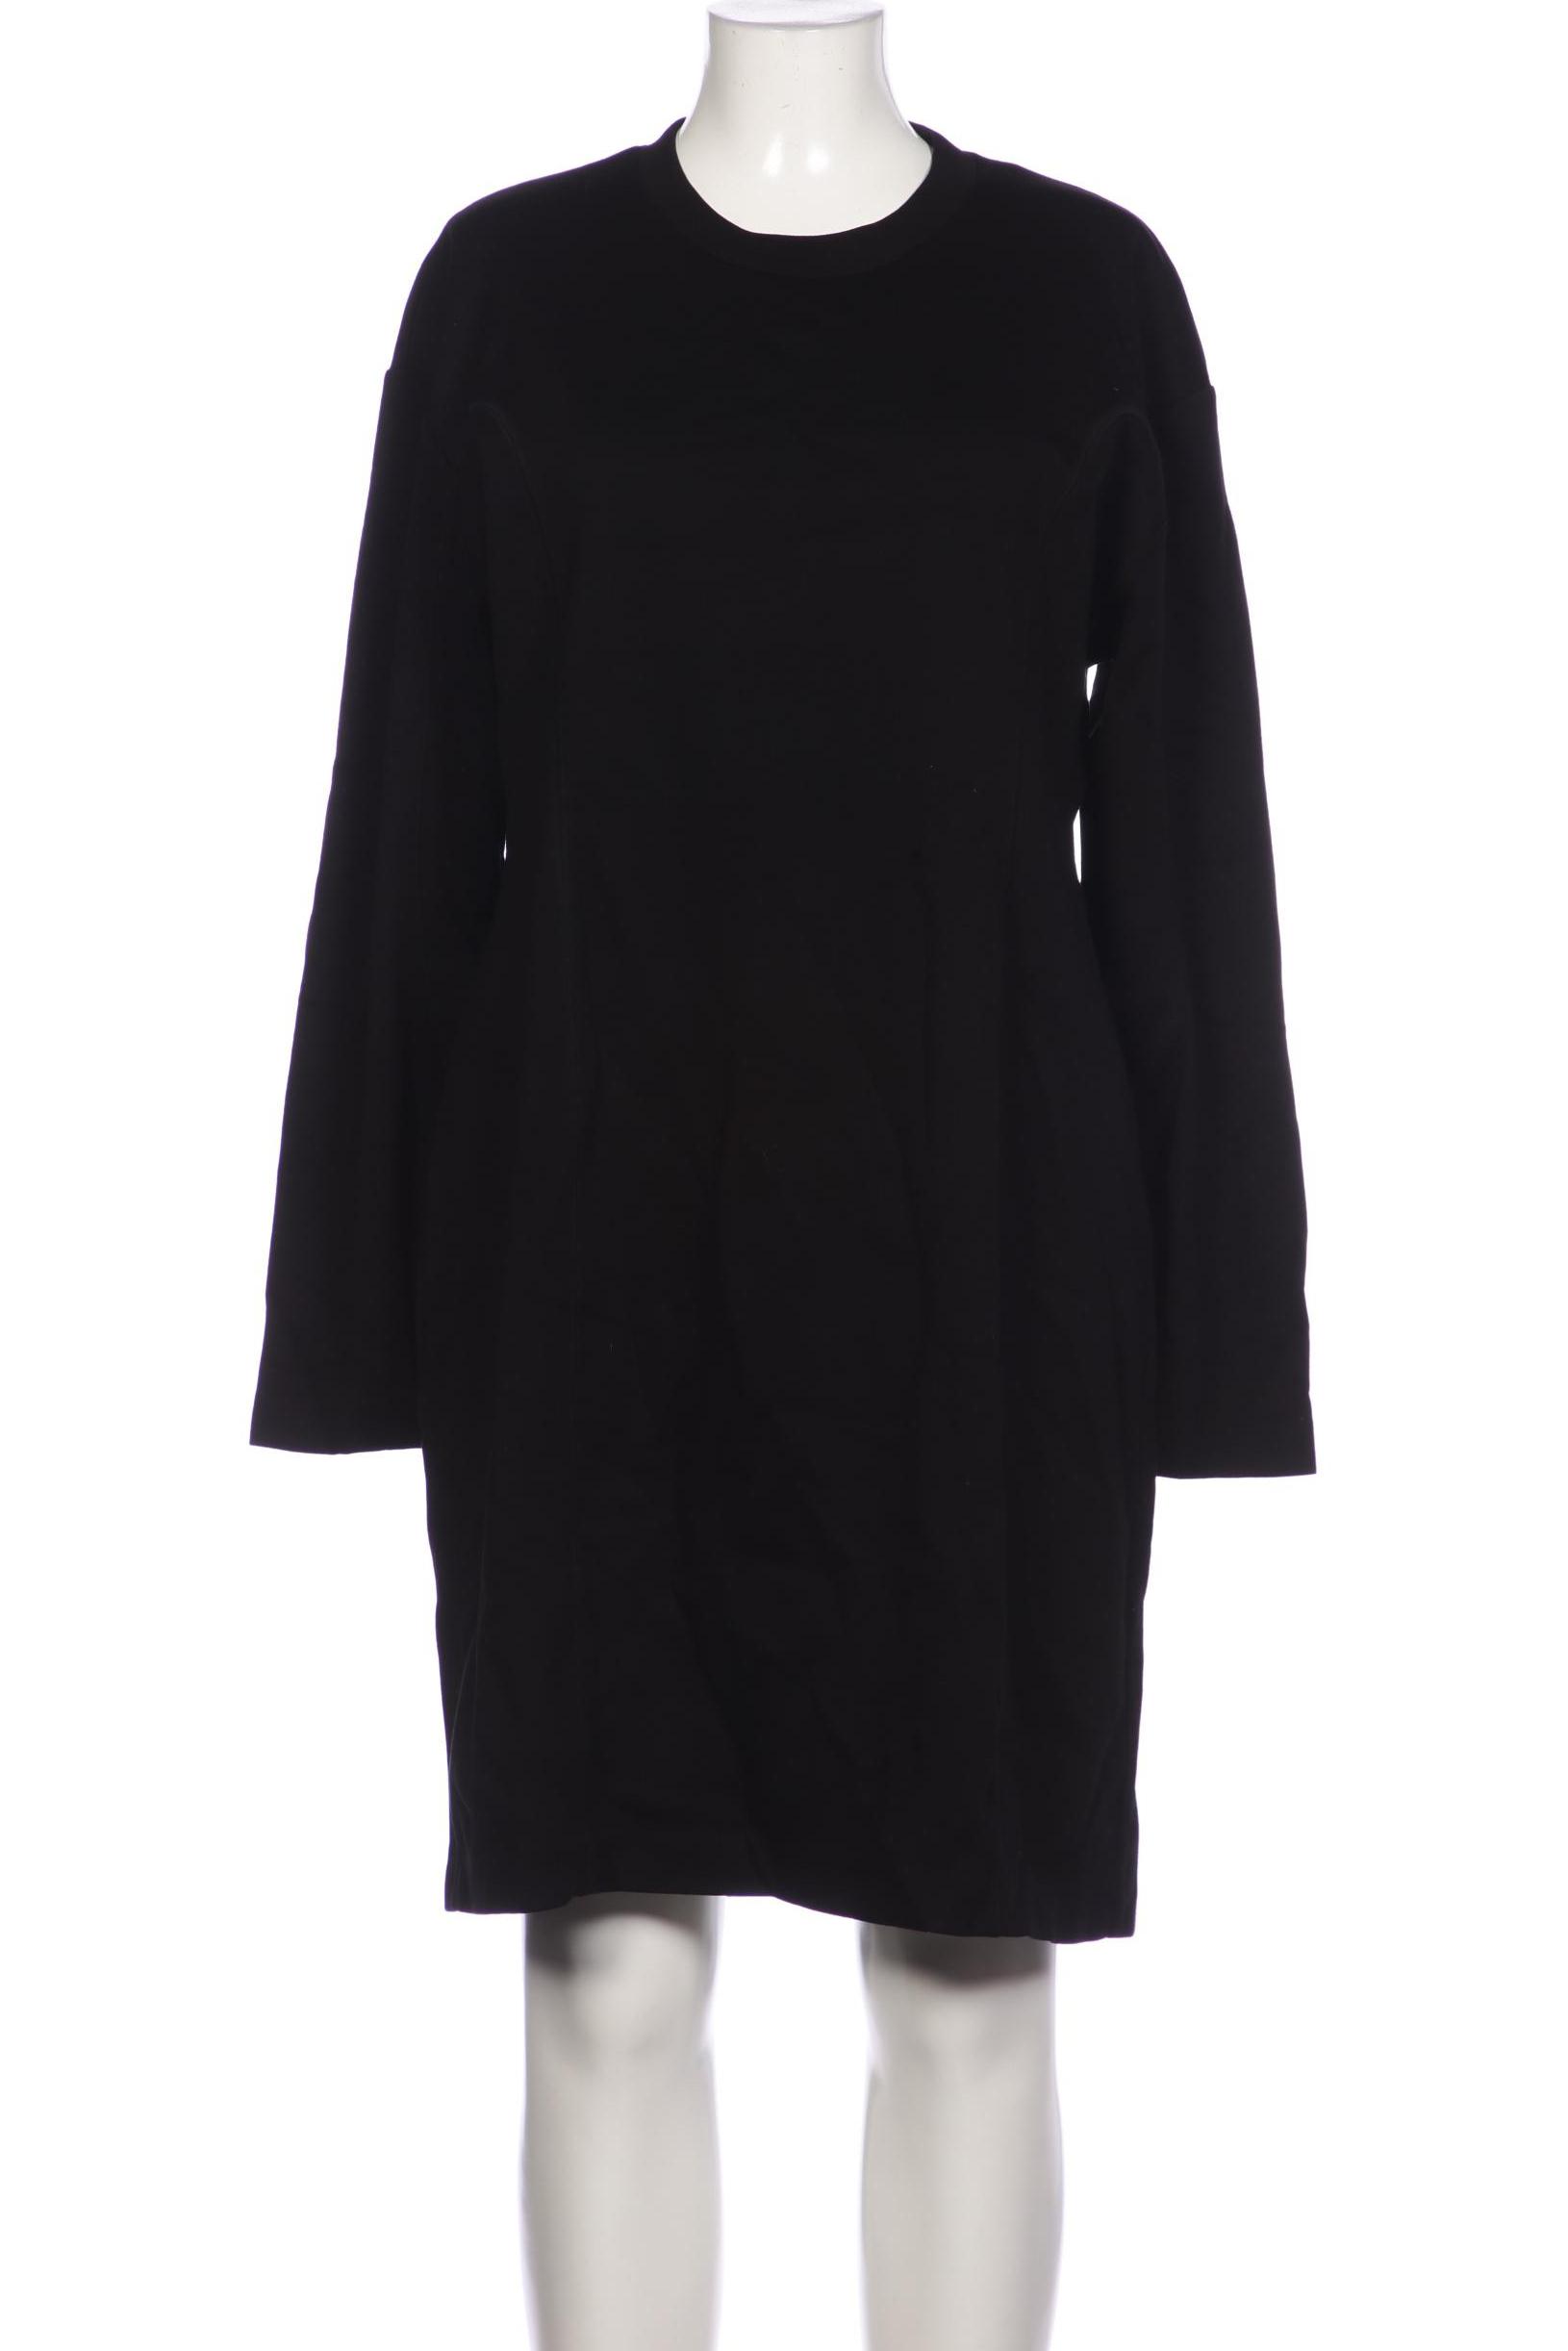 COS Damen Kleid, schwarz, Gr. 42 von COS